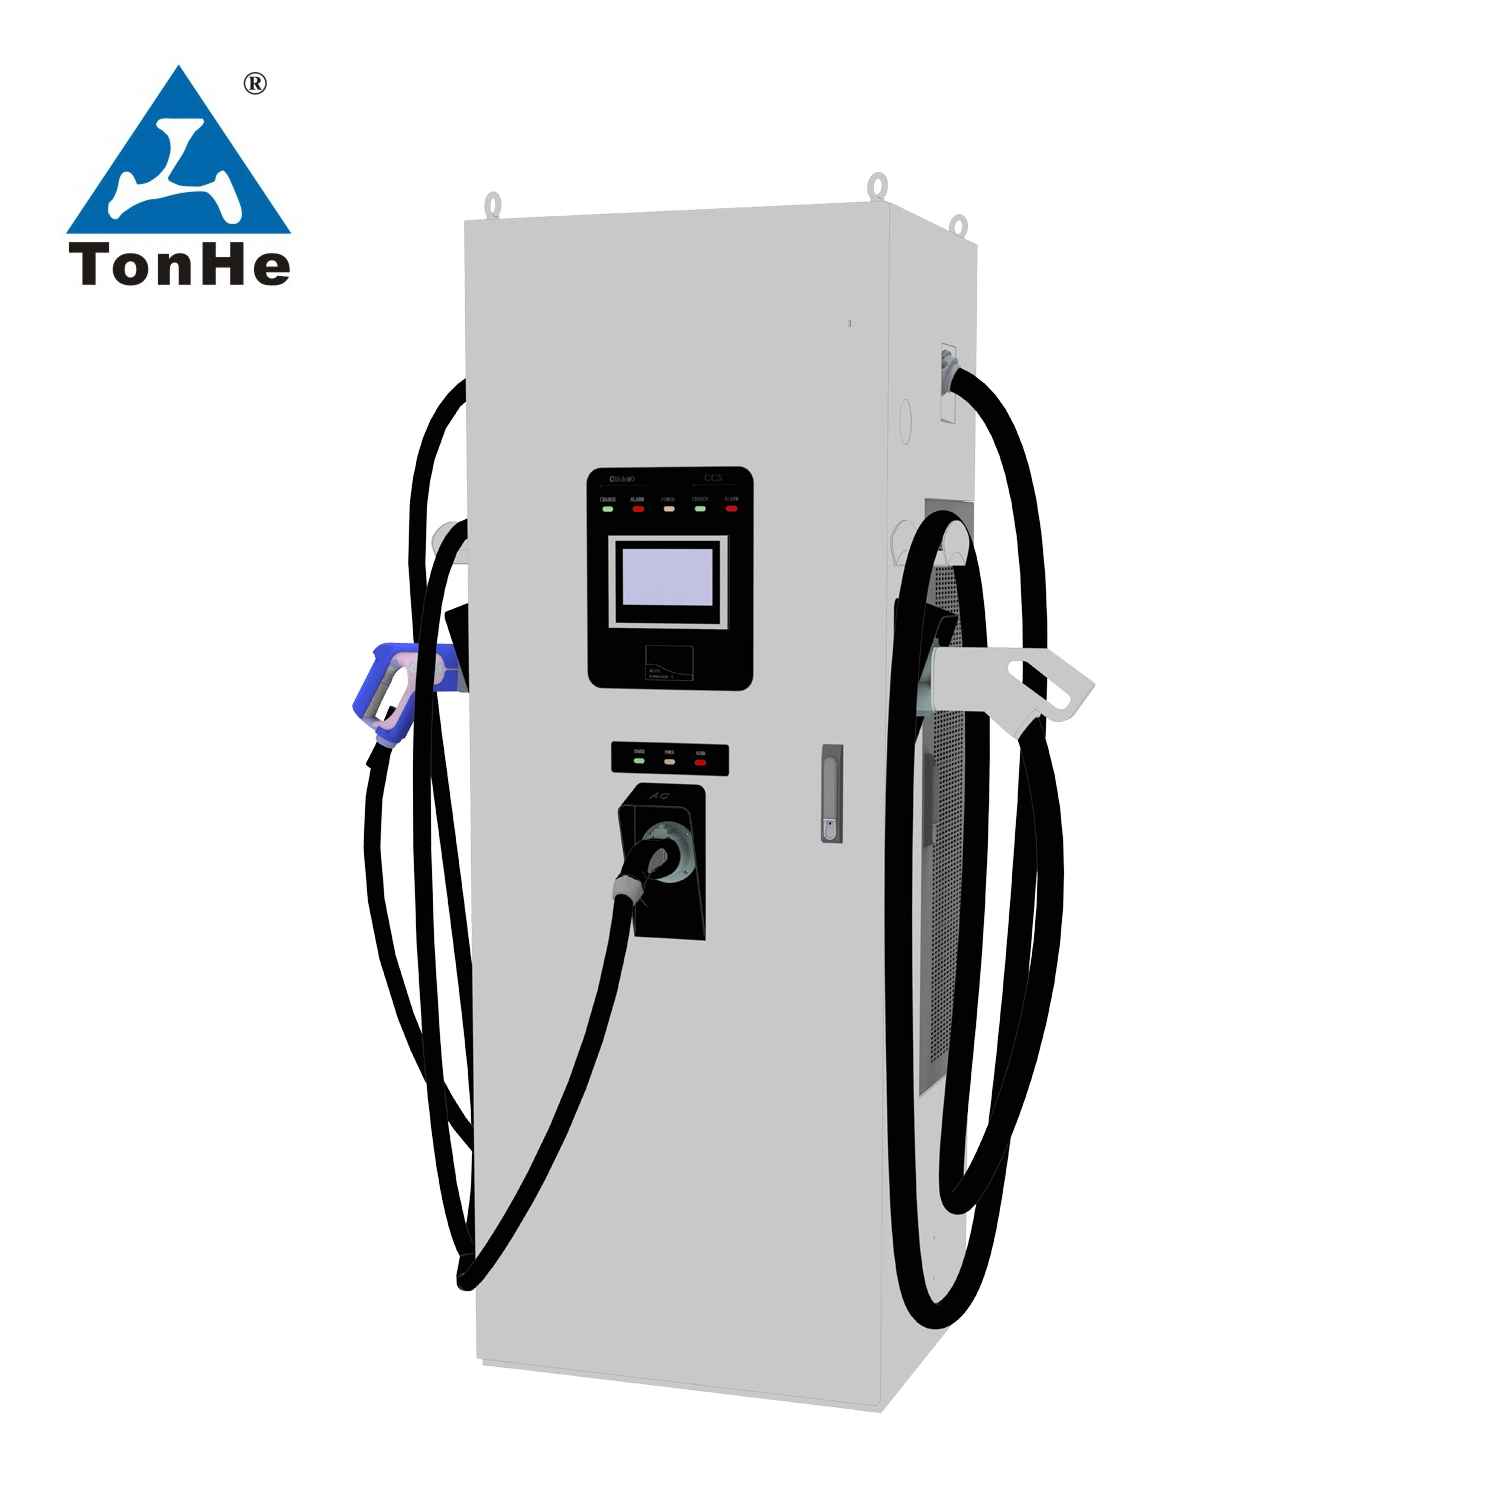 Tonhe Three-Gun EV зарядного устройства постоянного тока типа CCS 2 Acdc Chademo для EV Super зарядной станции